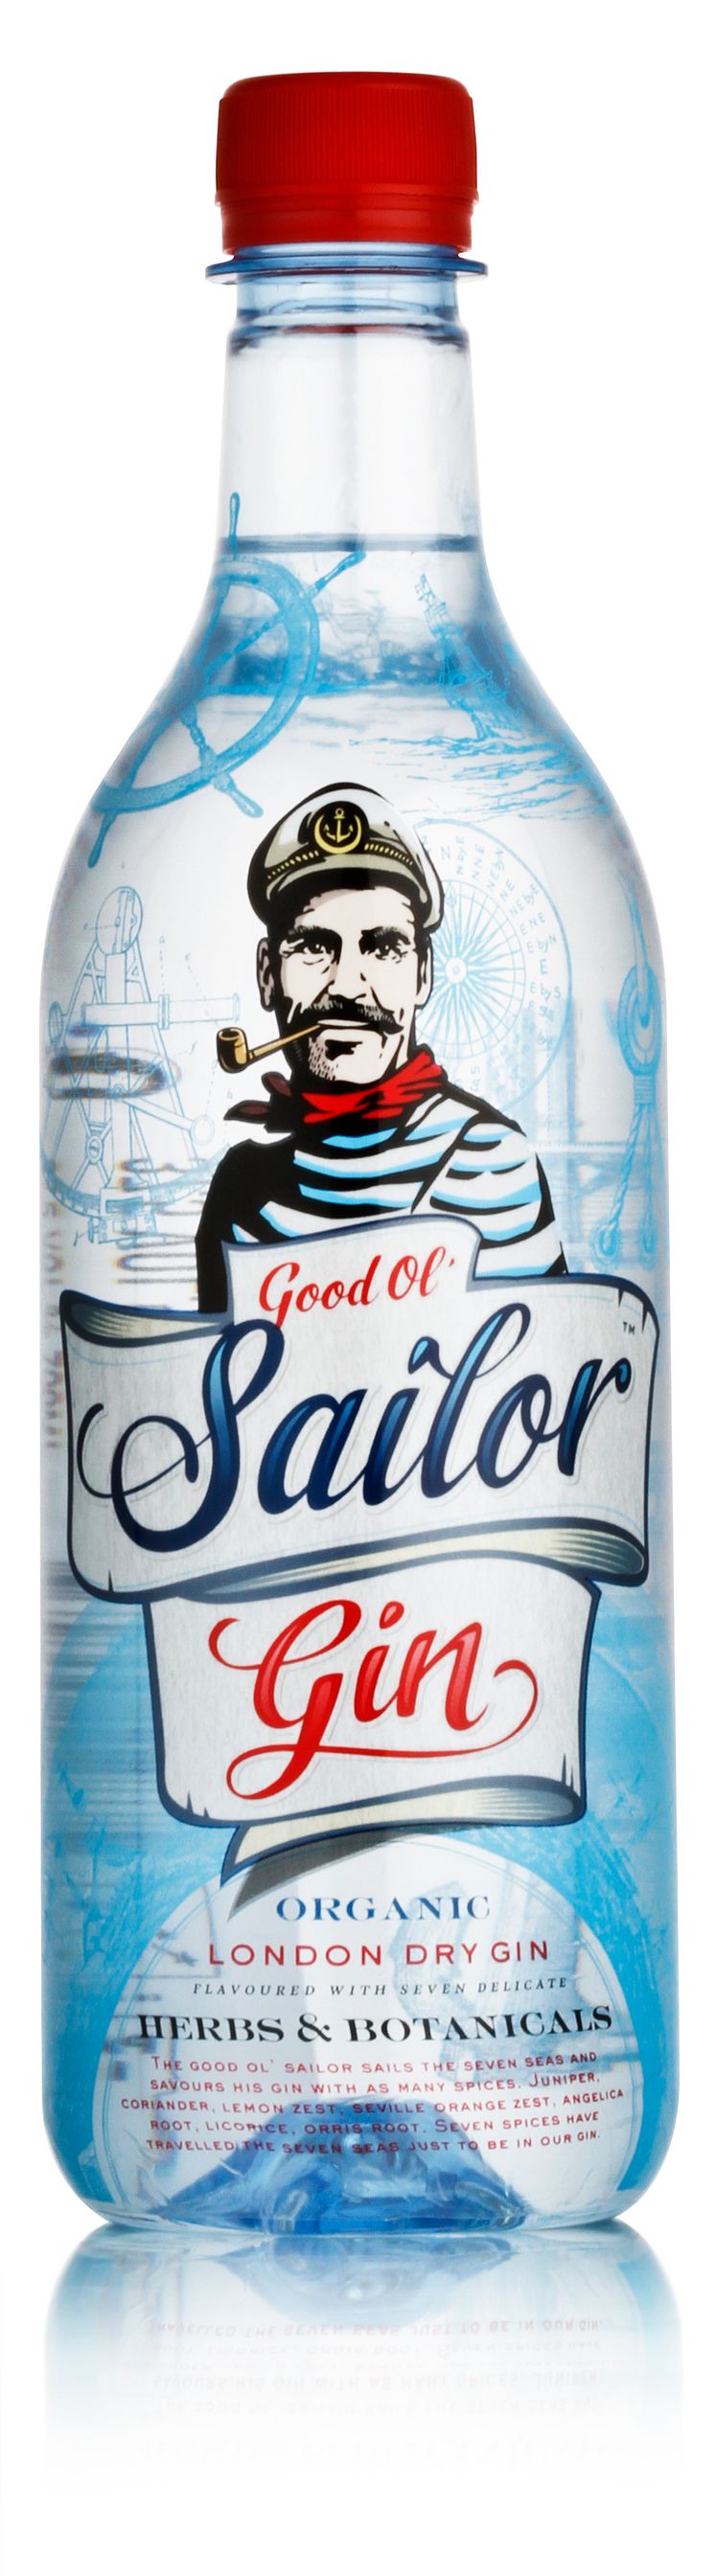 Good ol' Sailor Gin